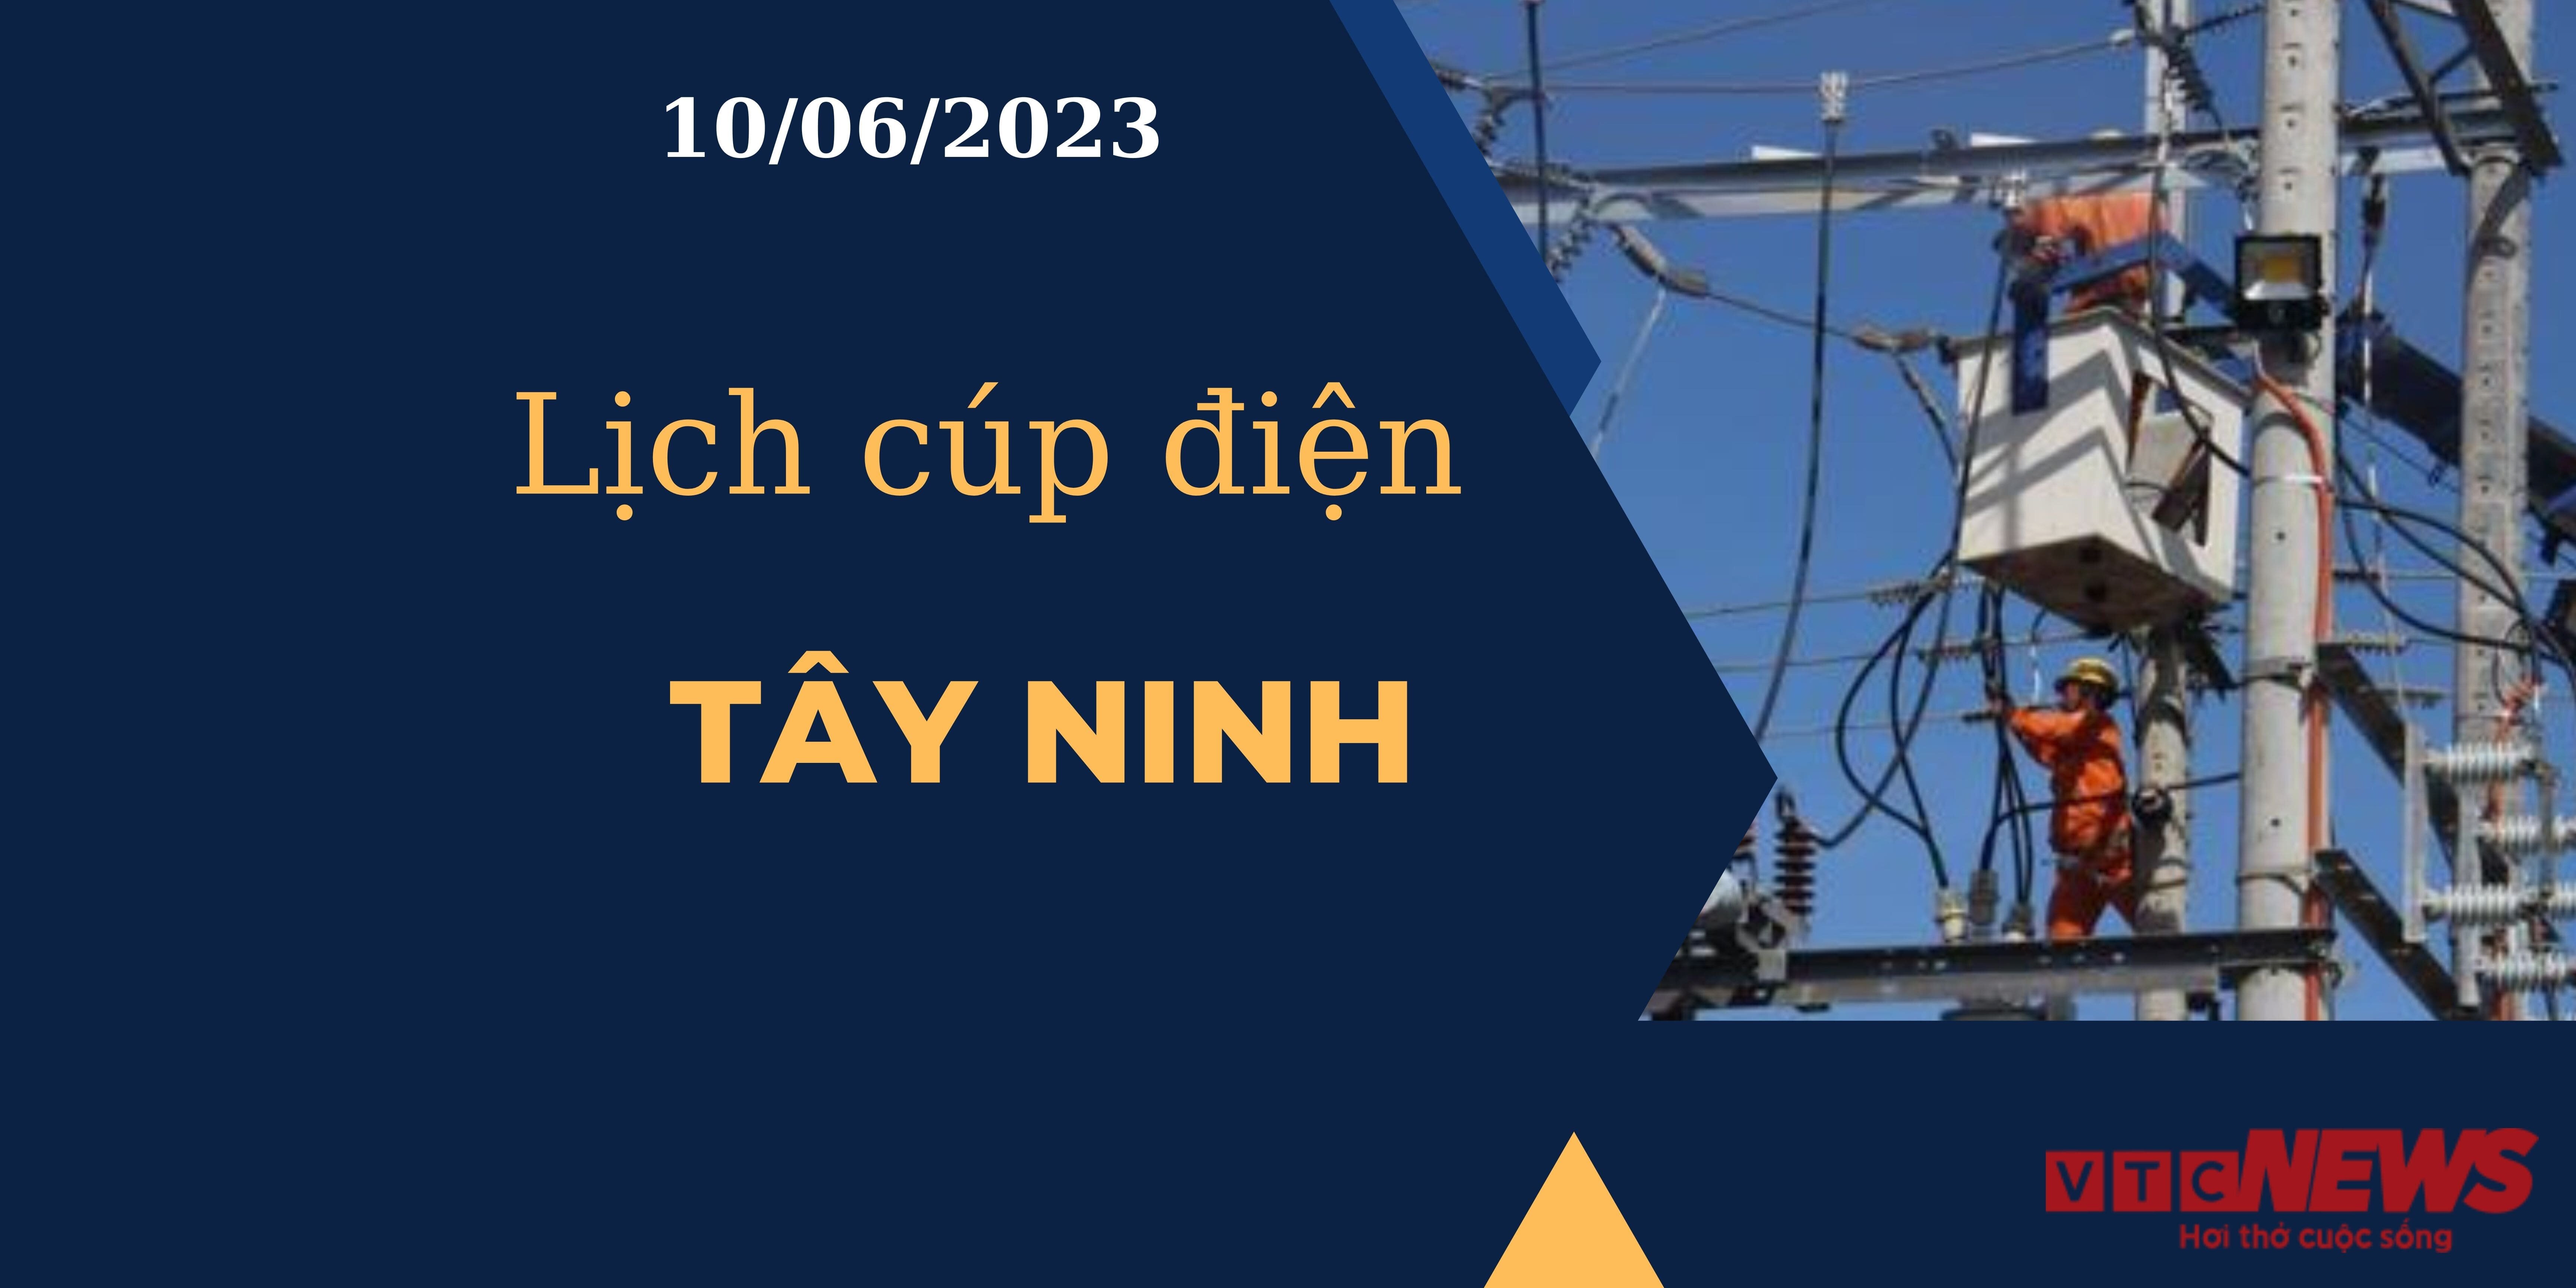 Lịch cúp điện hôm nay ngày 10/06/2023 tại Tây Ninh - 1